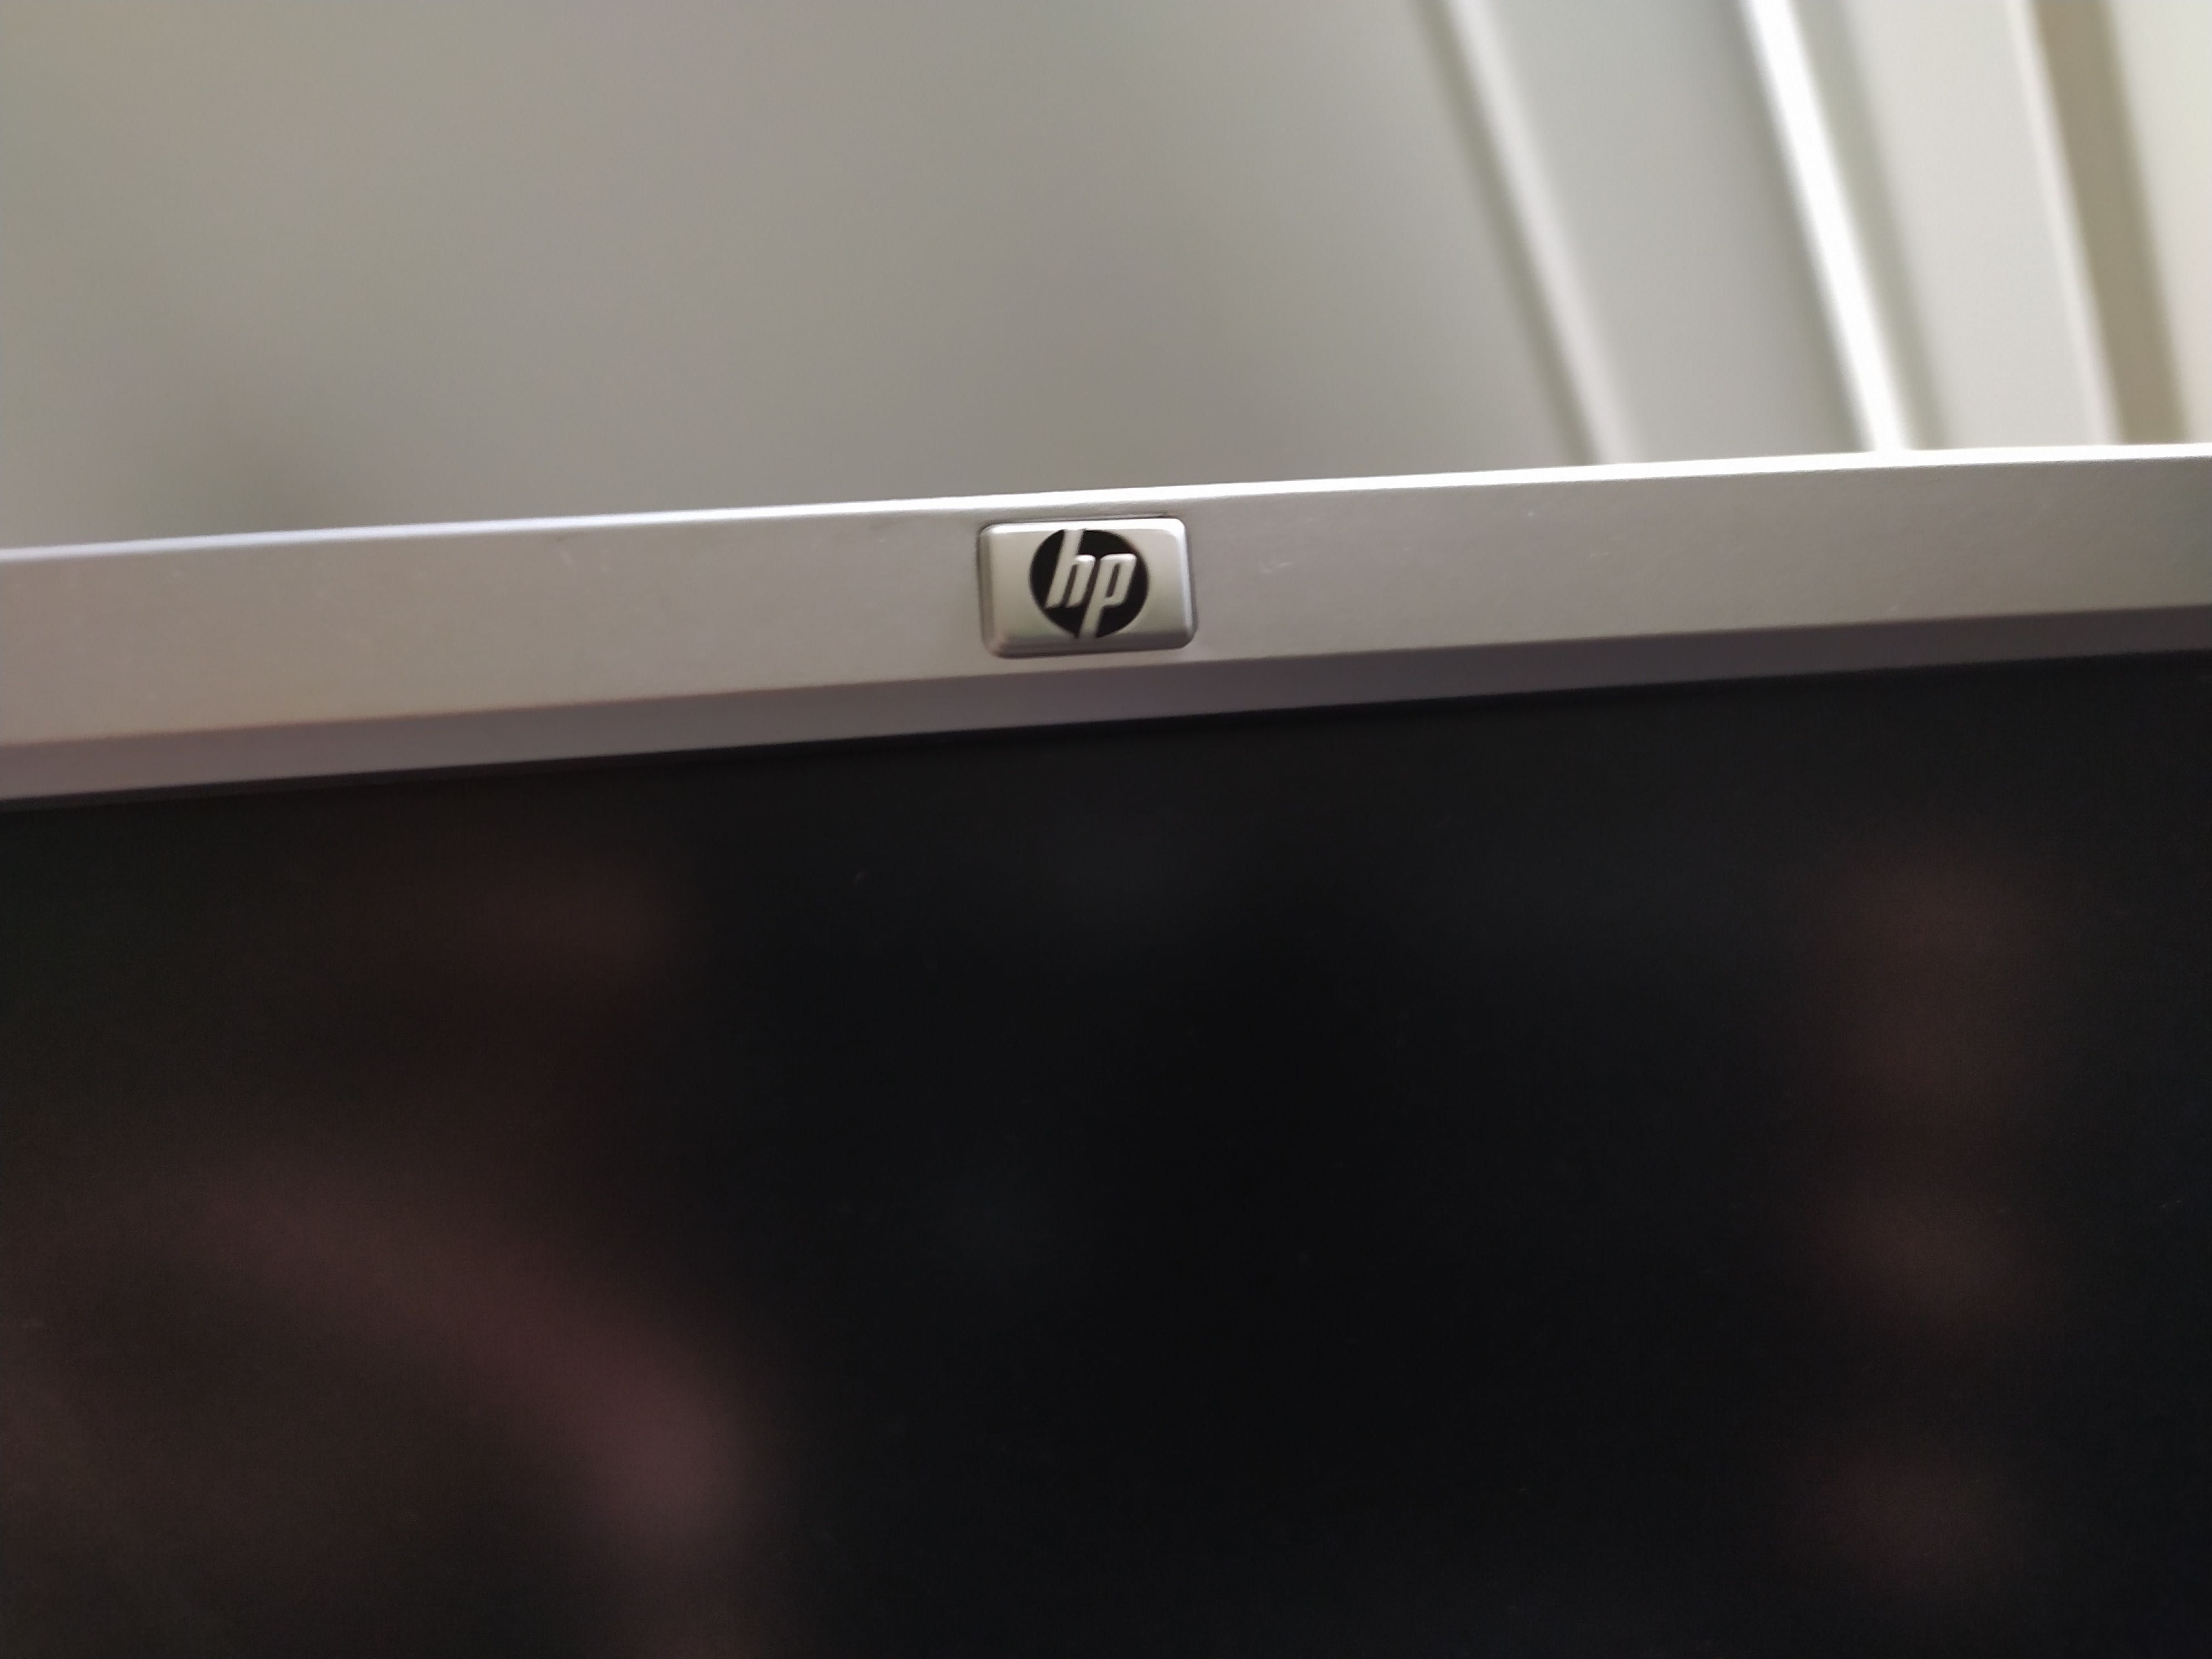 Monitor HP rotativo de 19 polegadas